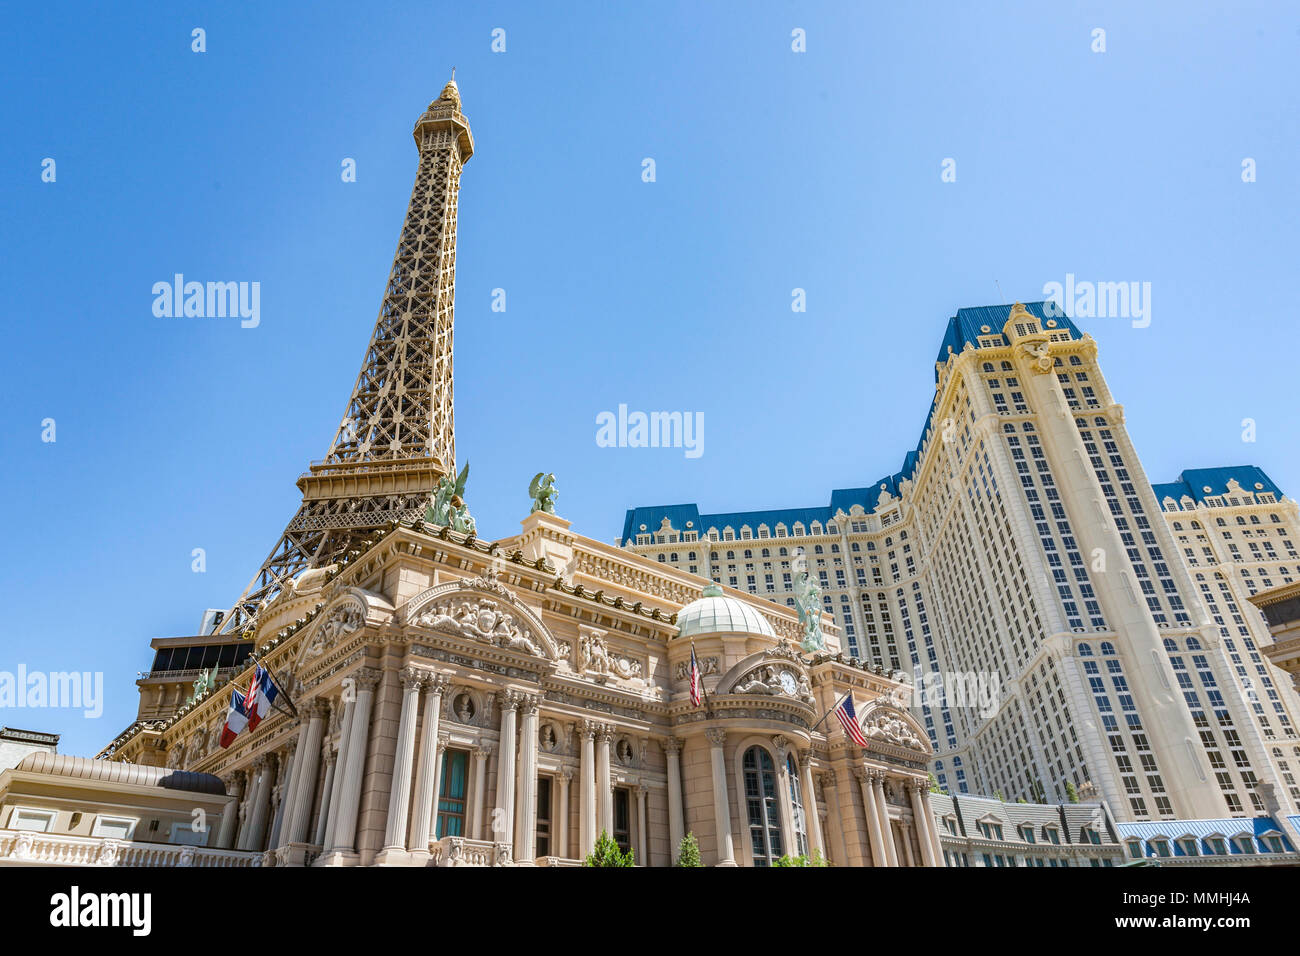 PARIS LAS VEGAS HOTEL & CASINO - Updated 2023 (Paradise, NV)